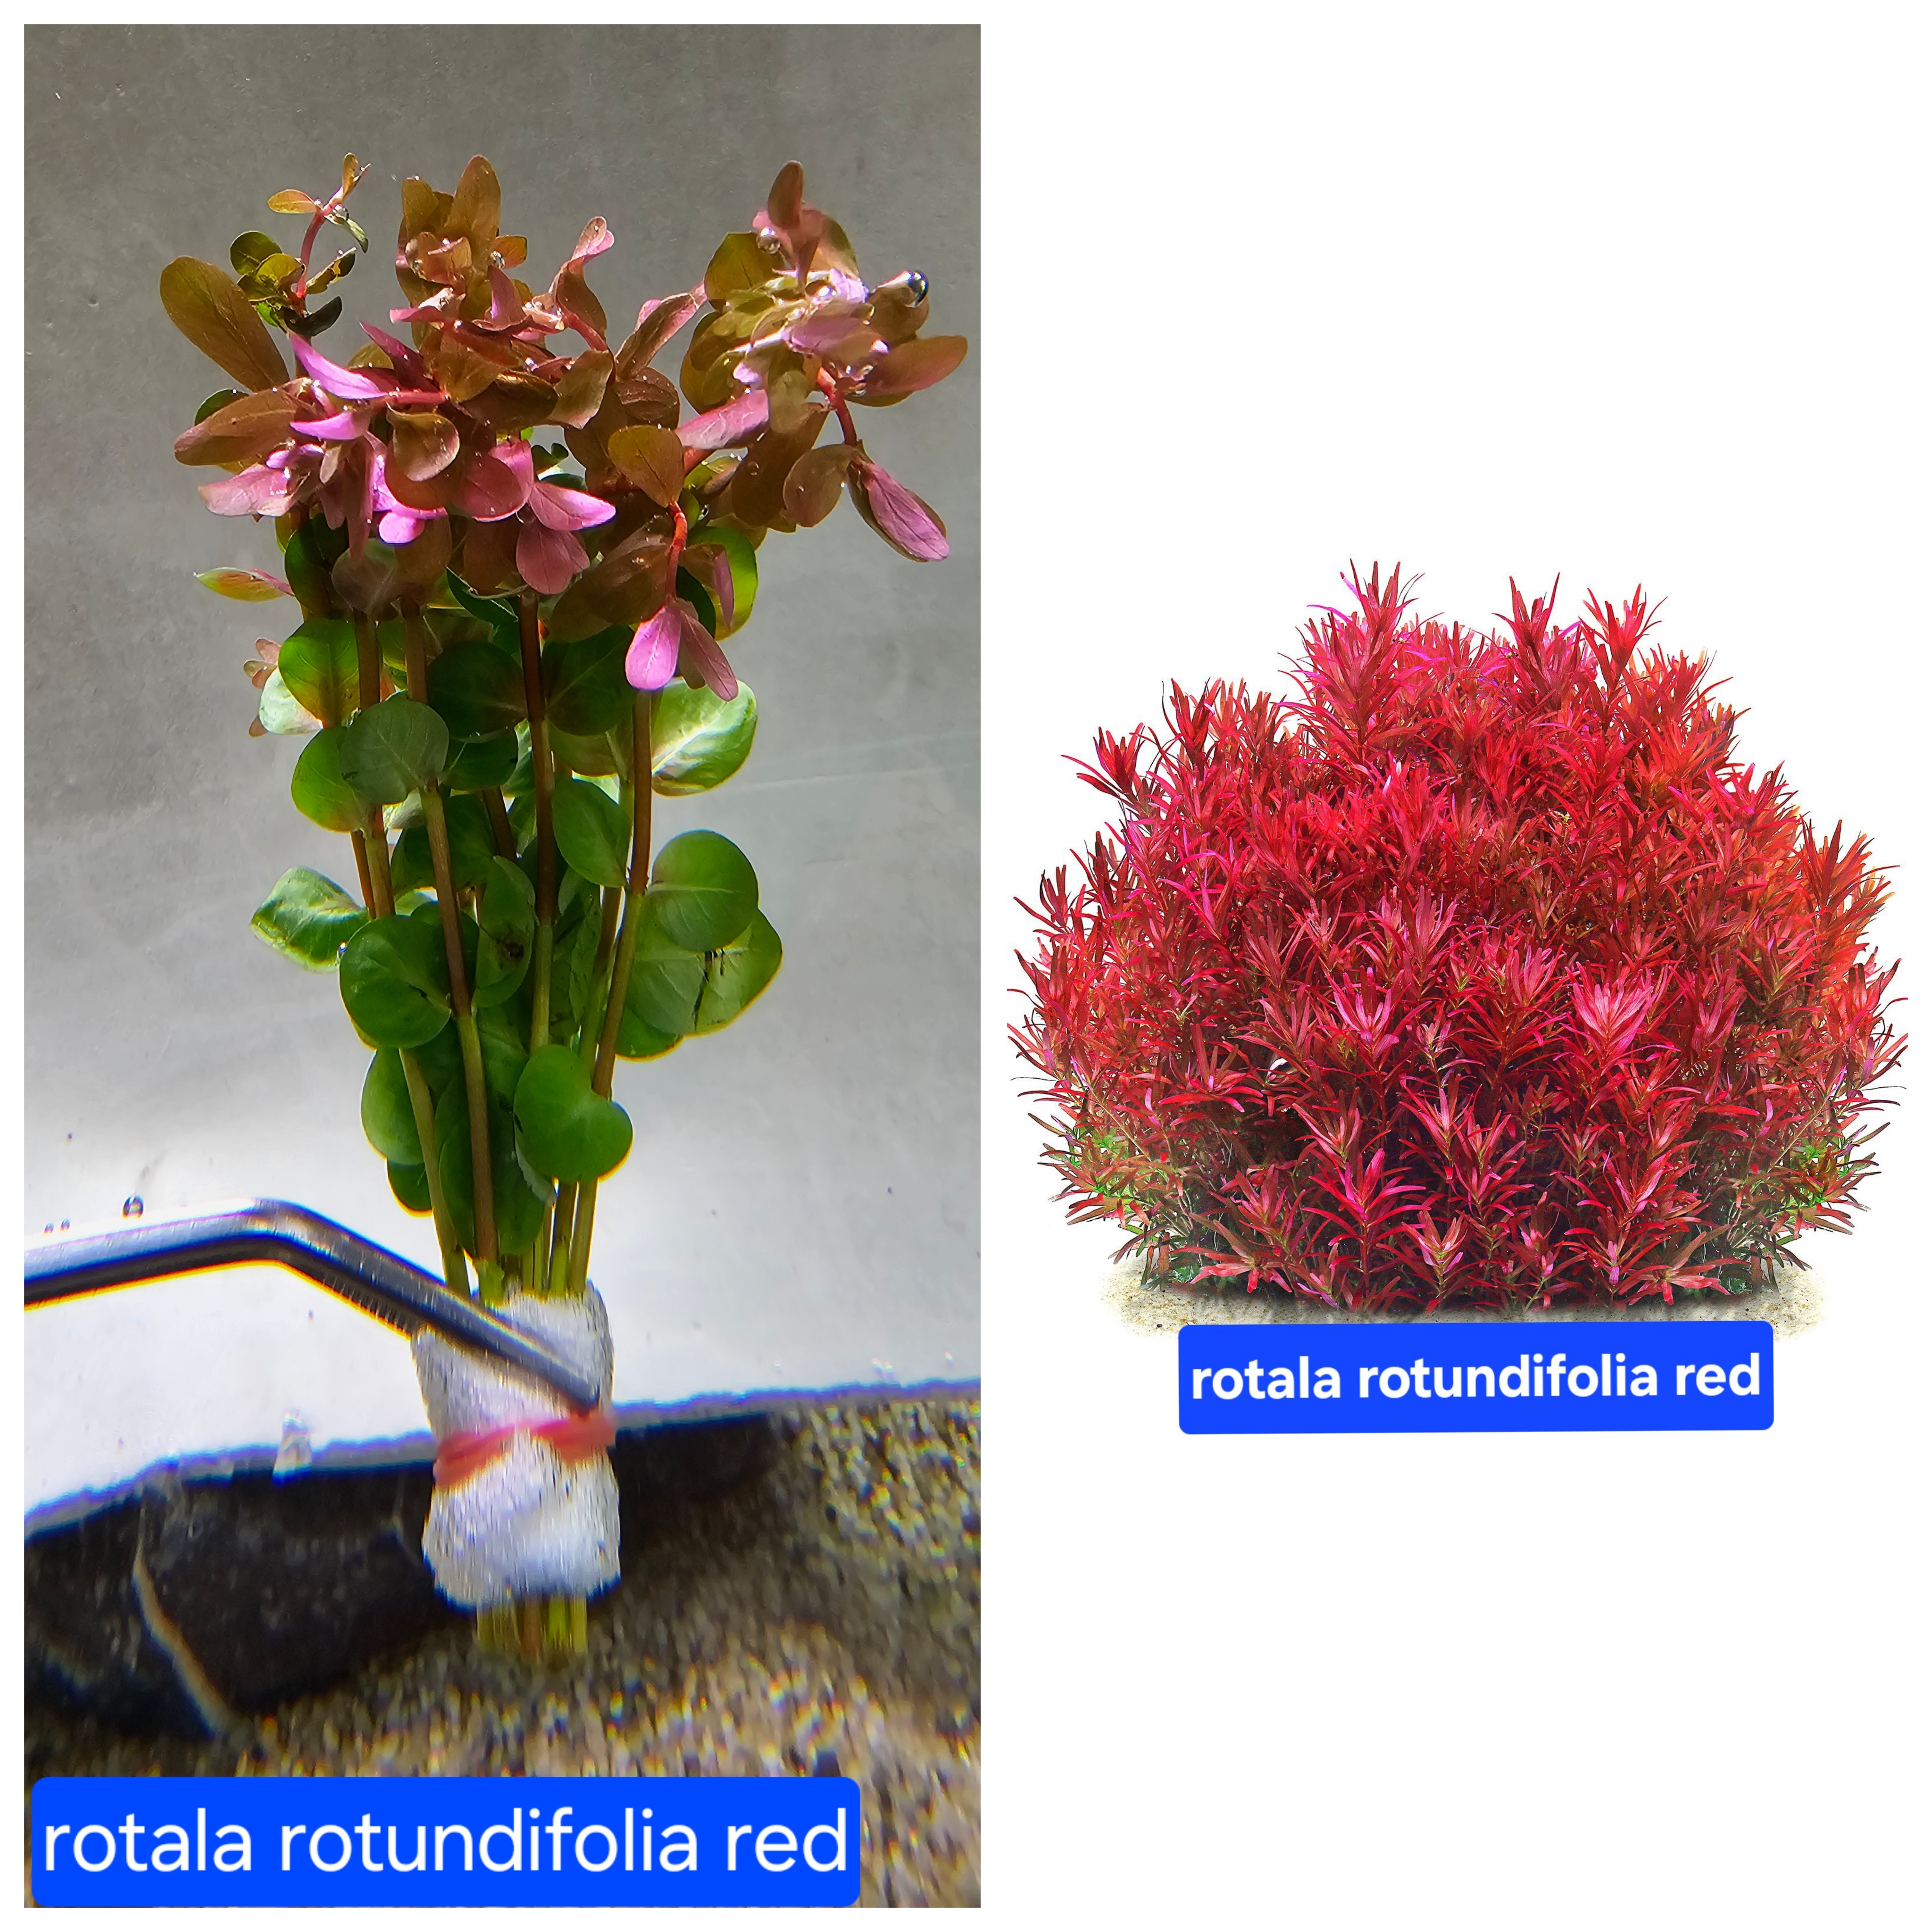 روتالا روتوندیفولیا قرمز rotala rotundifolia red